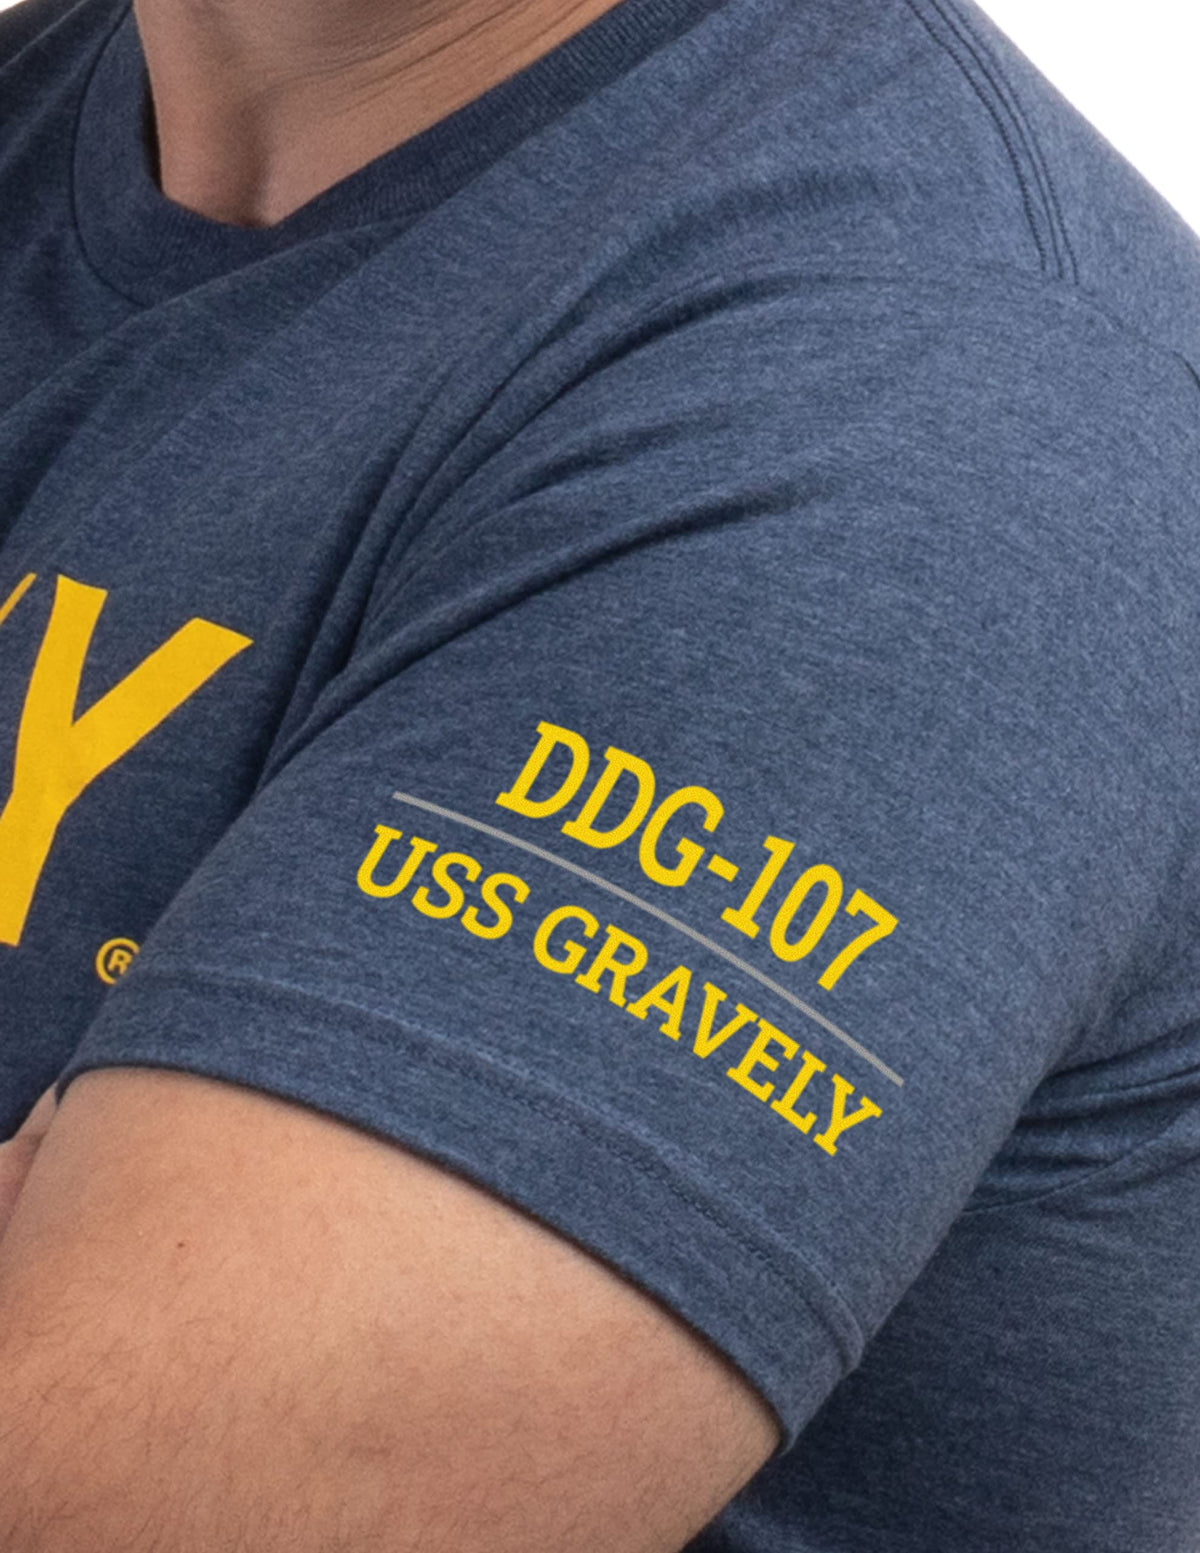 USS Gravely, DDG-107 | U.S. Navy Sailor Veteran USN United States Naval T-shirt for Men Women